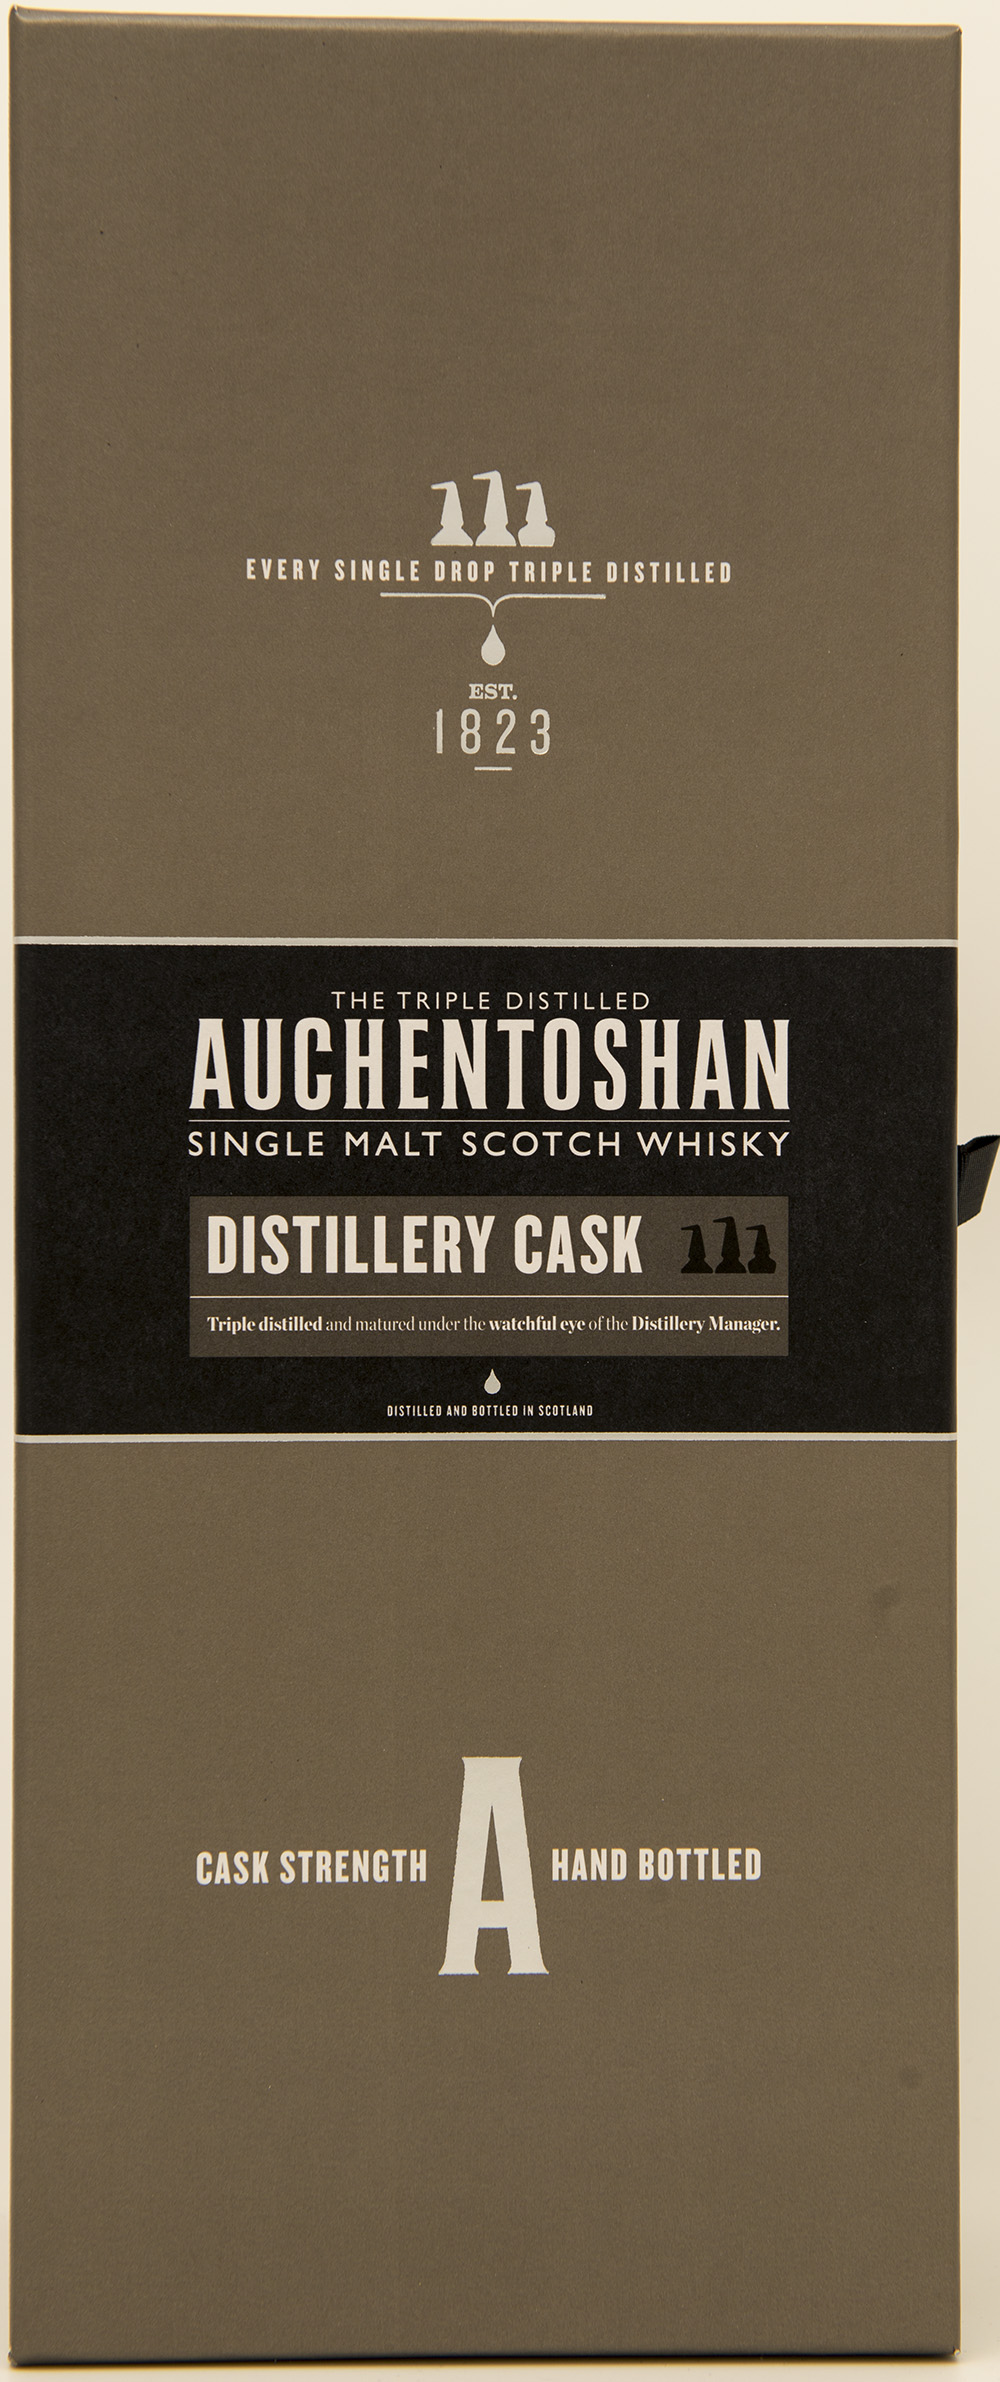 Billede: DSC_3258 - Auchentoshan Distillery Cask - box front.jpg